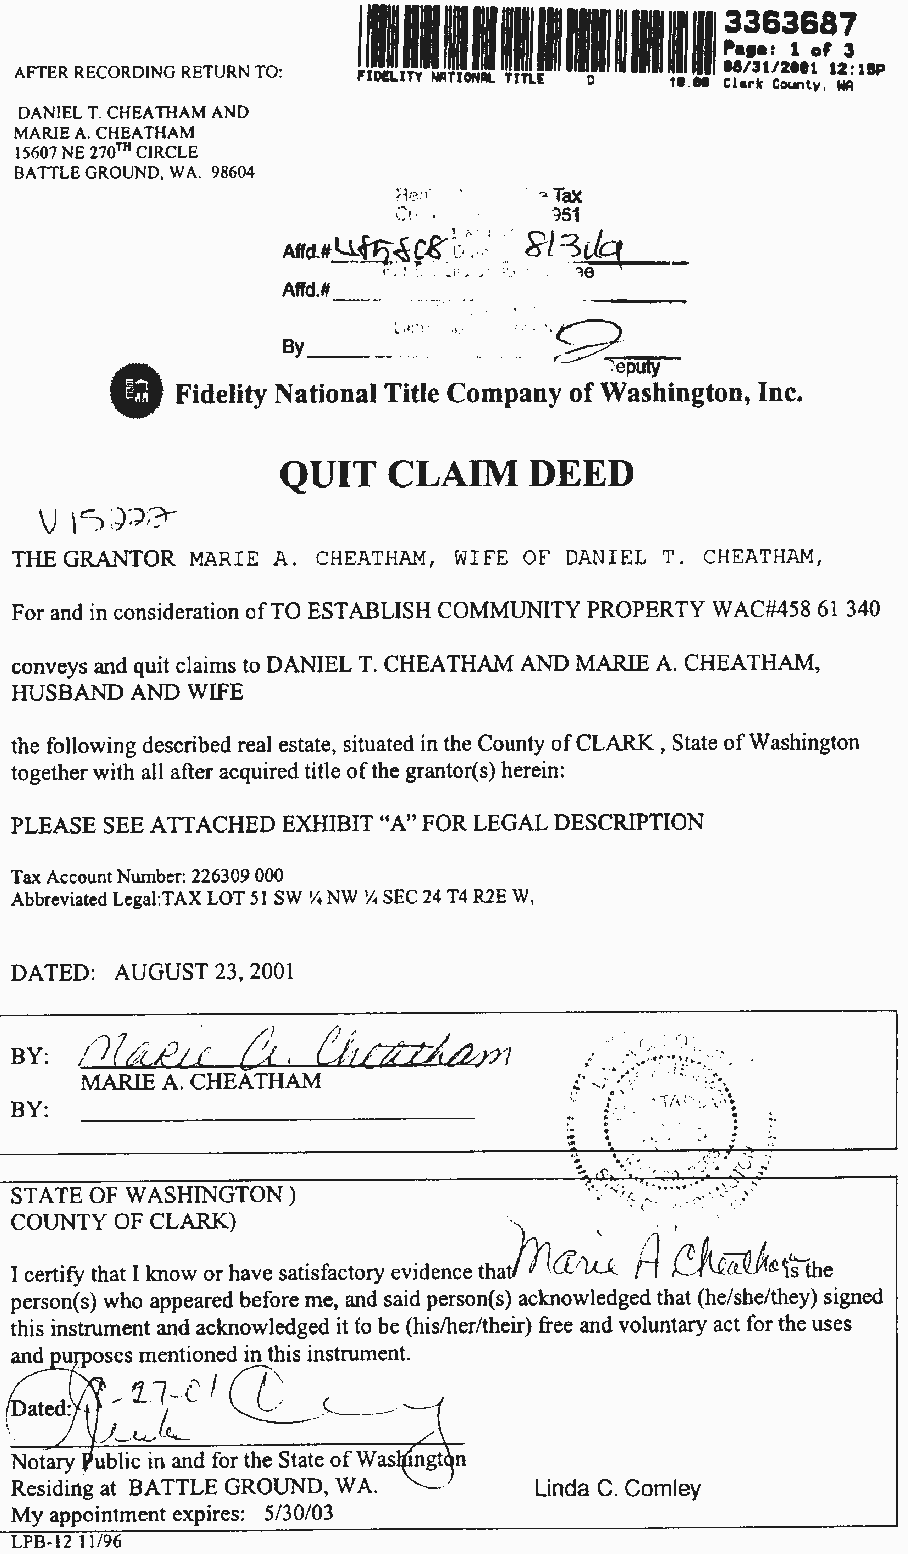 quit deed claim